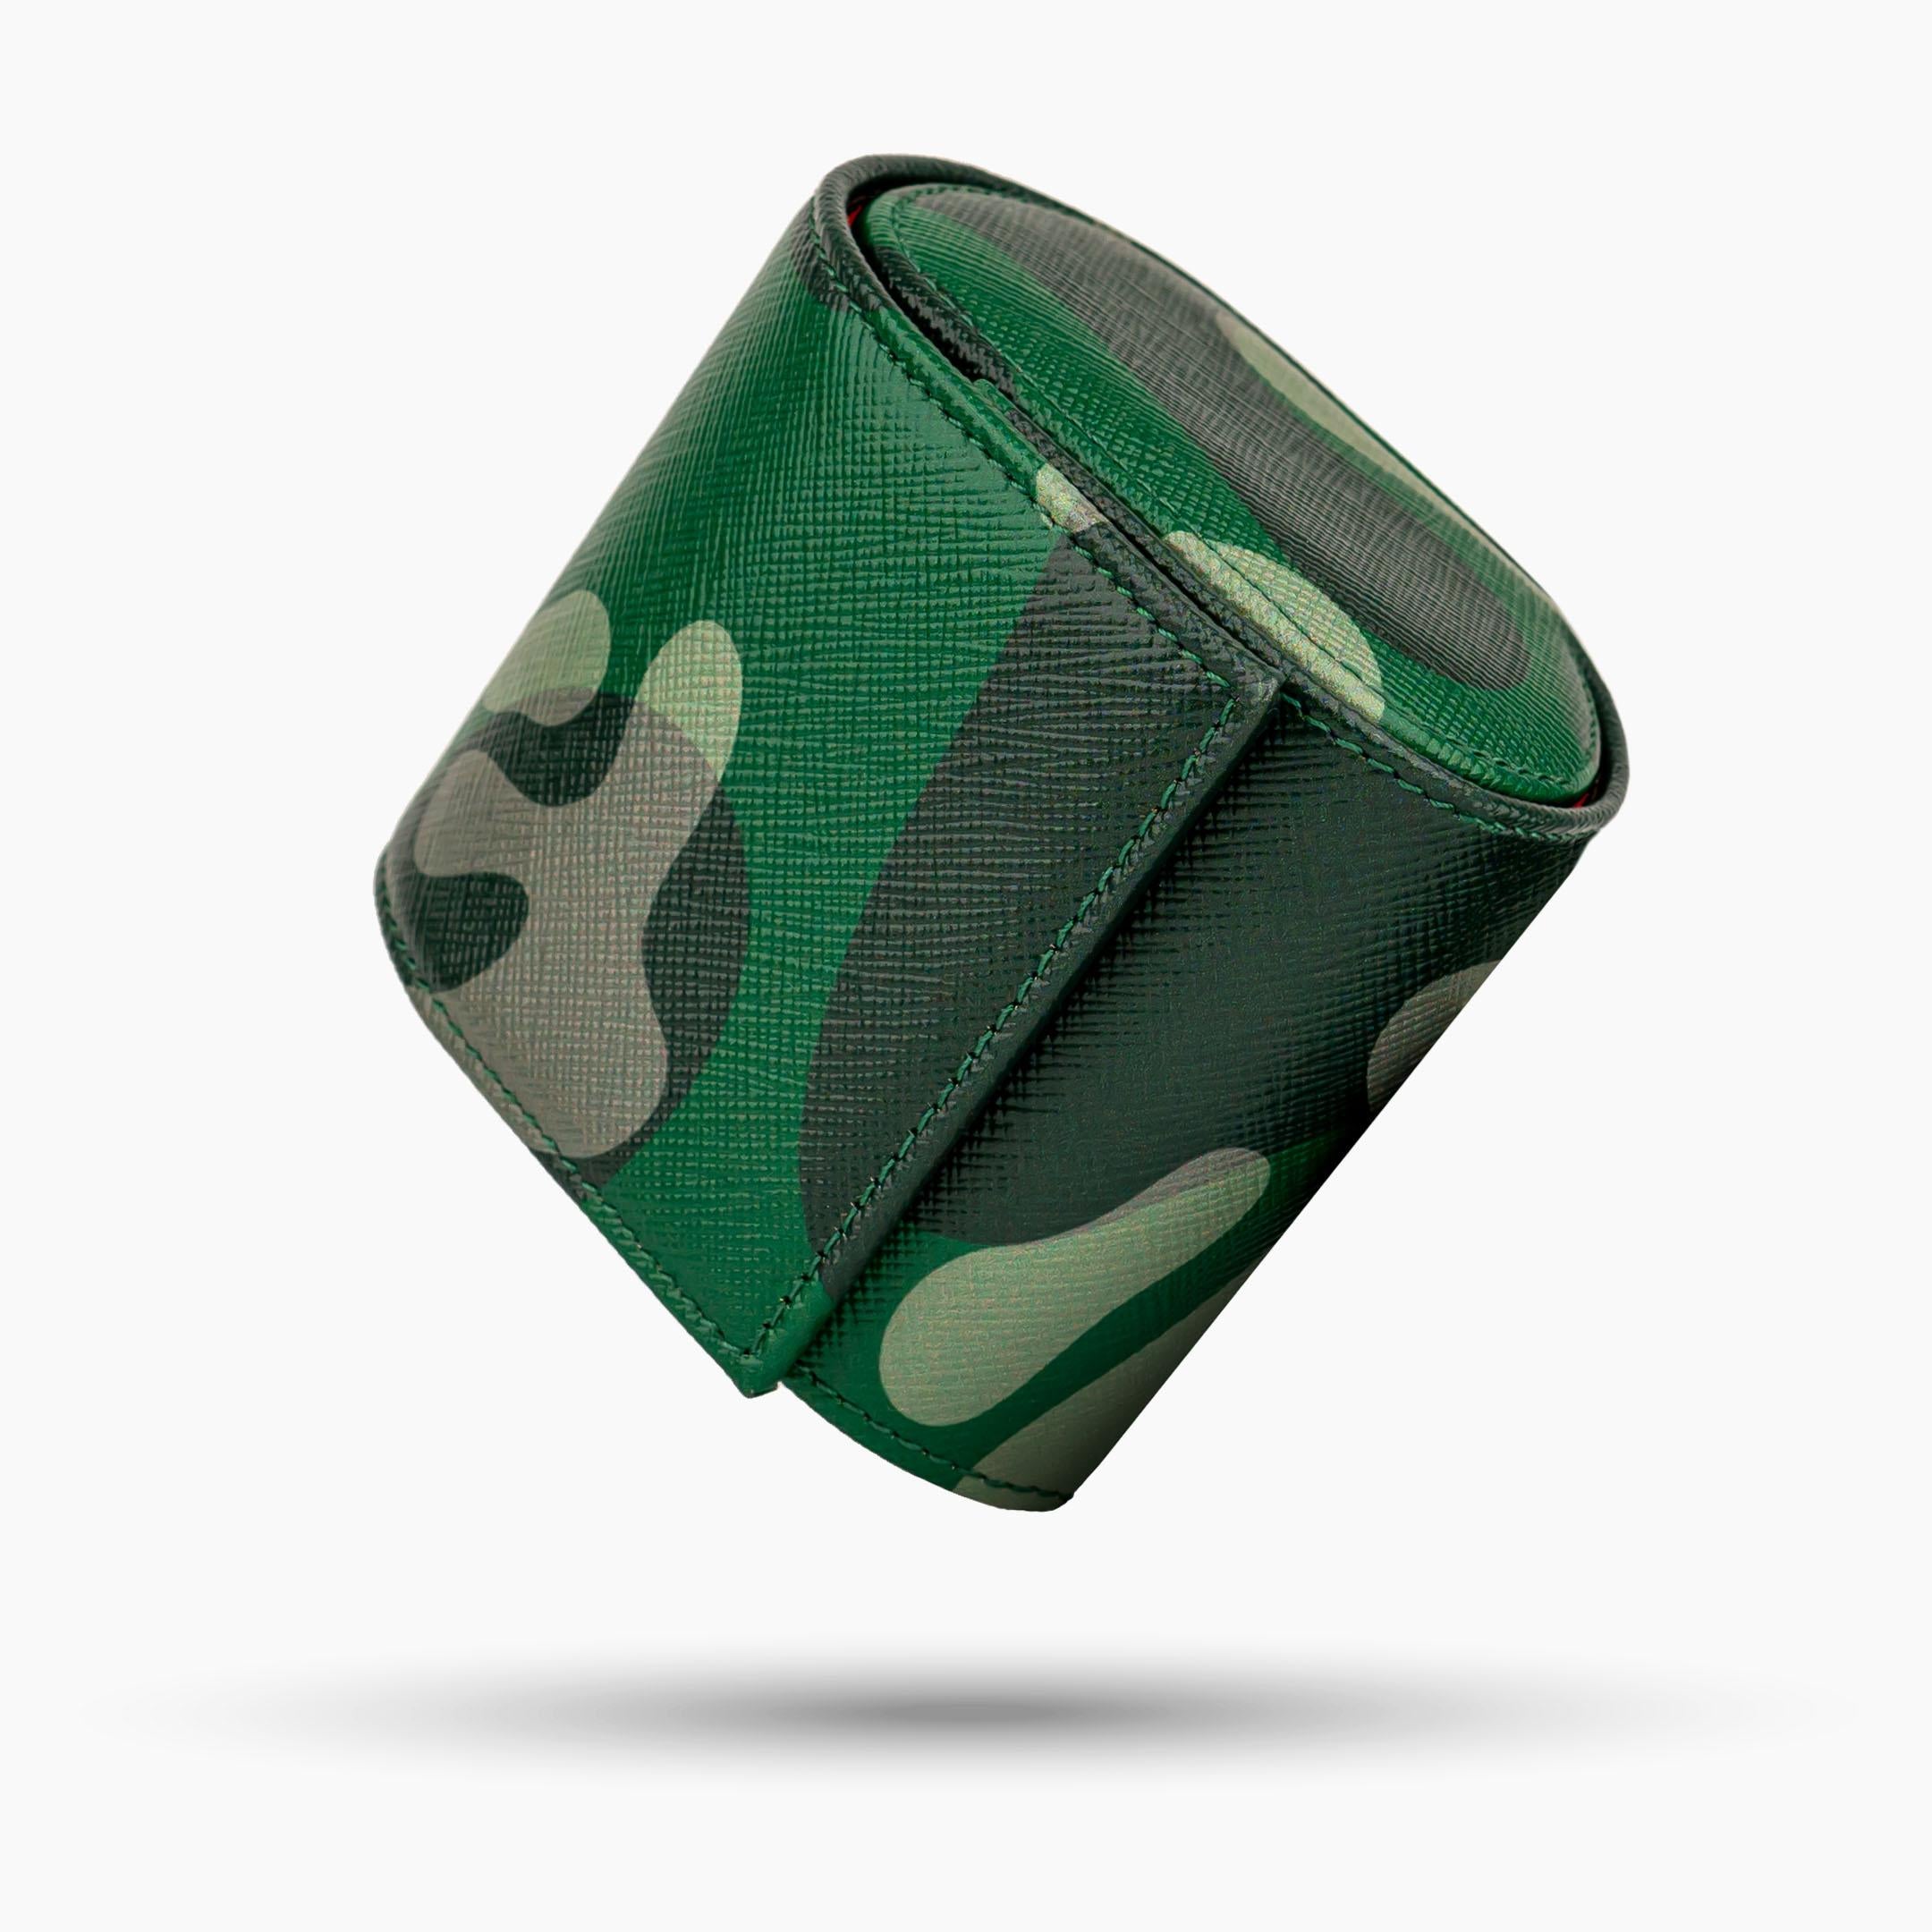 IFL Watches - Watch Roll - Green Camo Watch Roll für 1 Uhr-Uhrenrolle-TOJU Interior